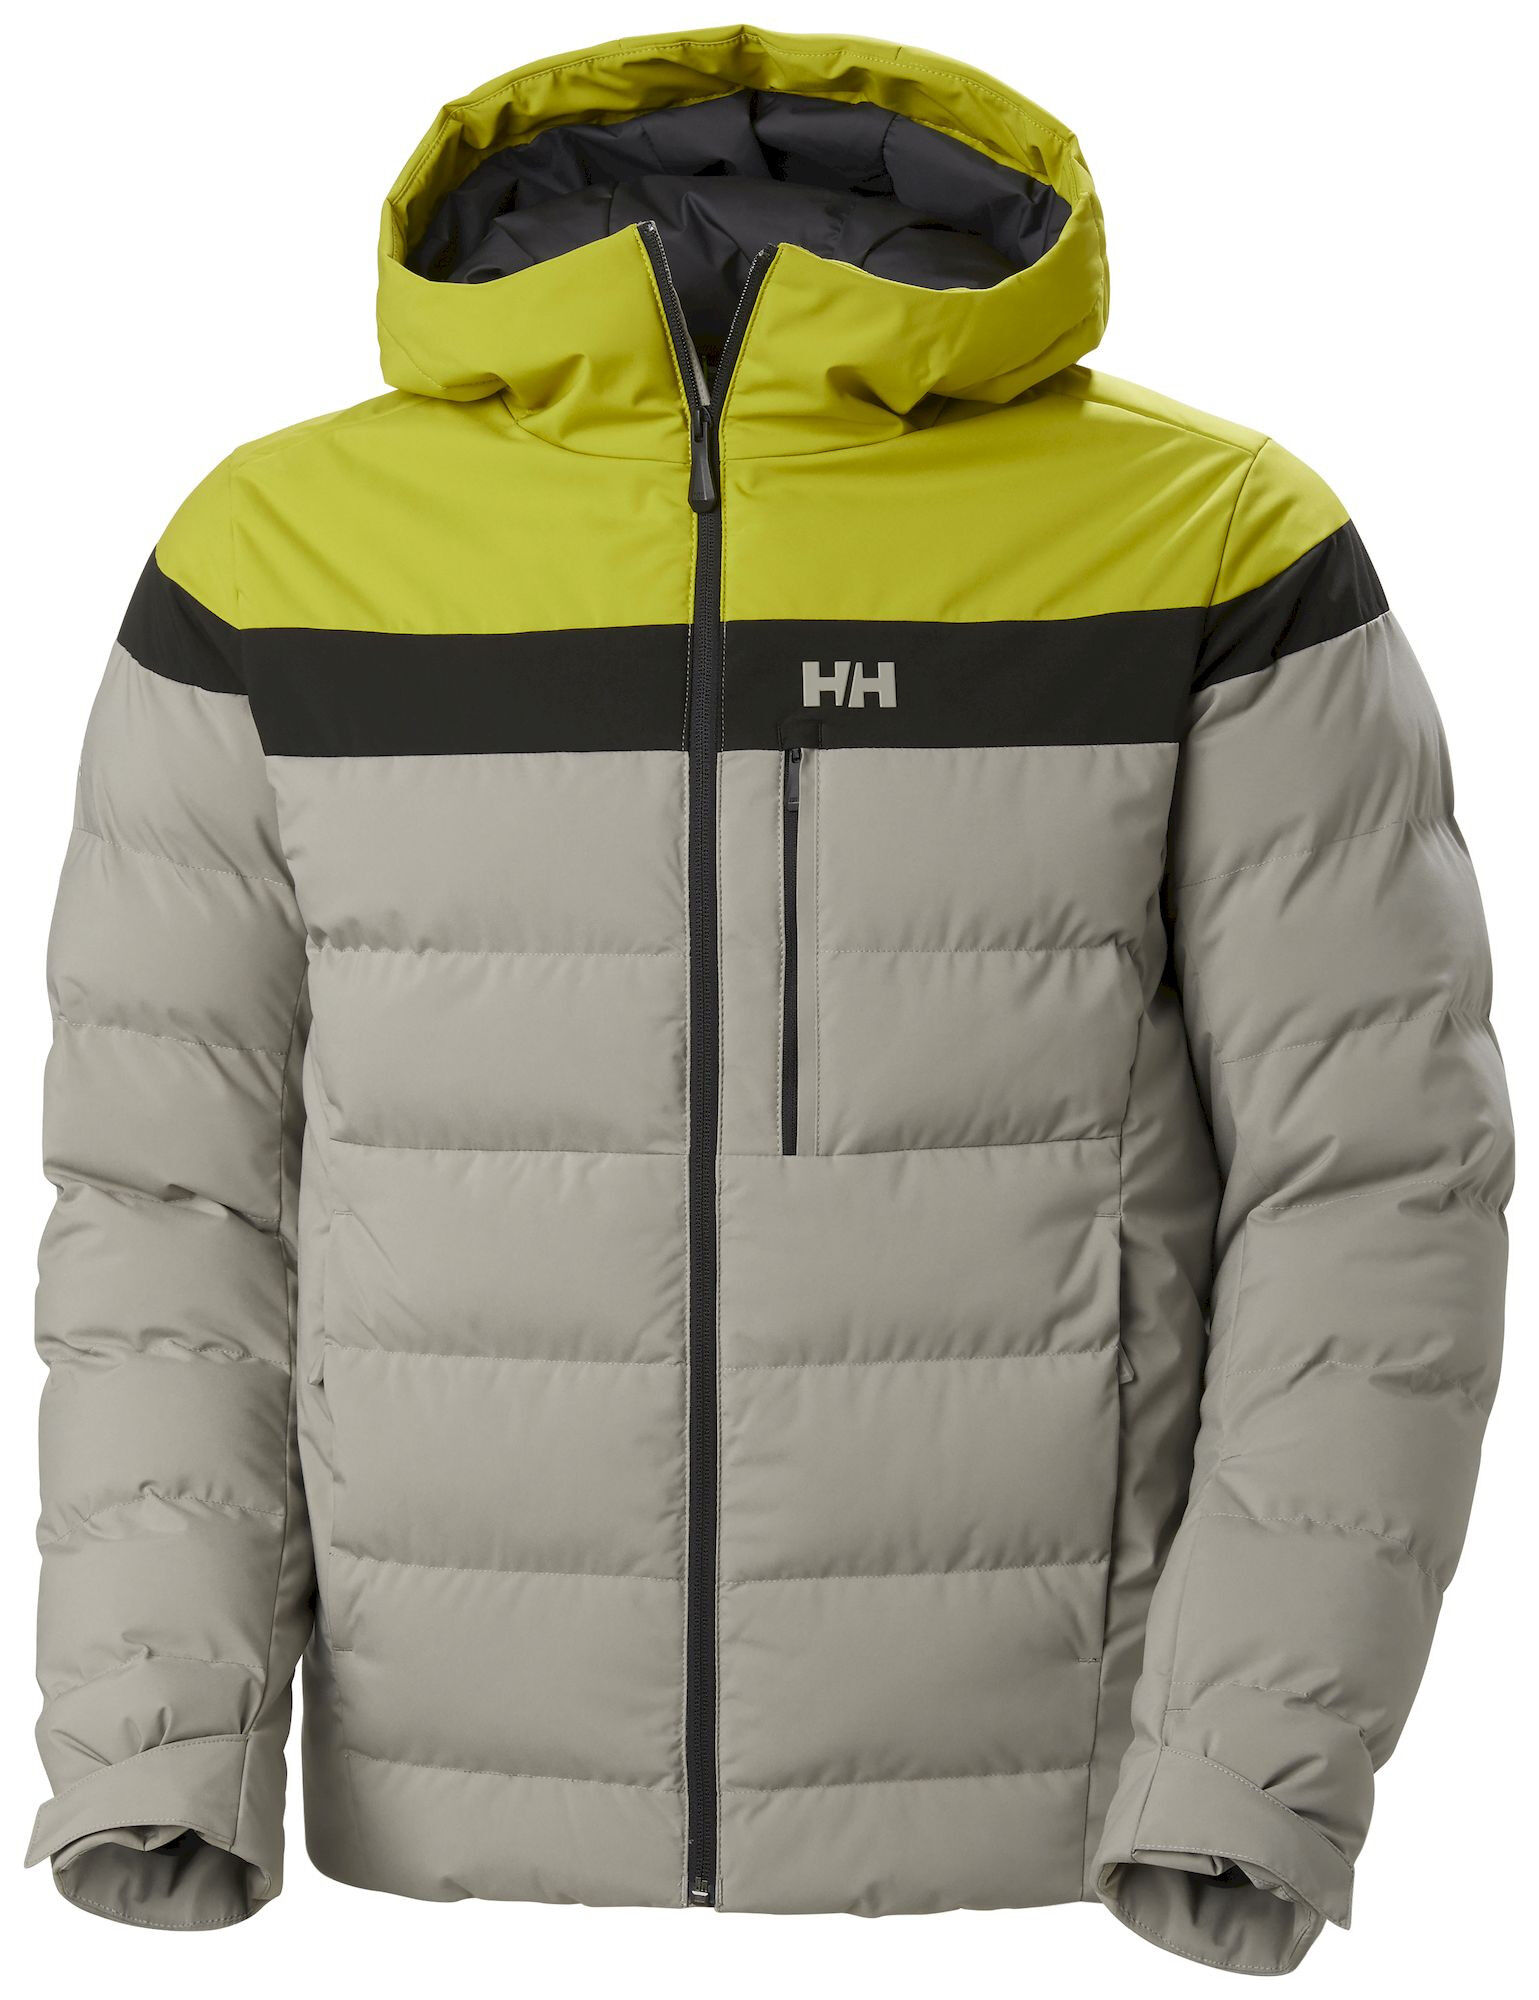 Helly Hansen Bossanova Puffy Jacket - Ski jacket - Men's